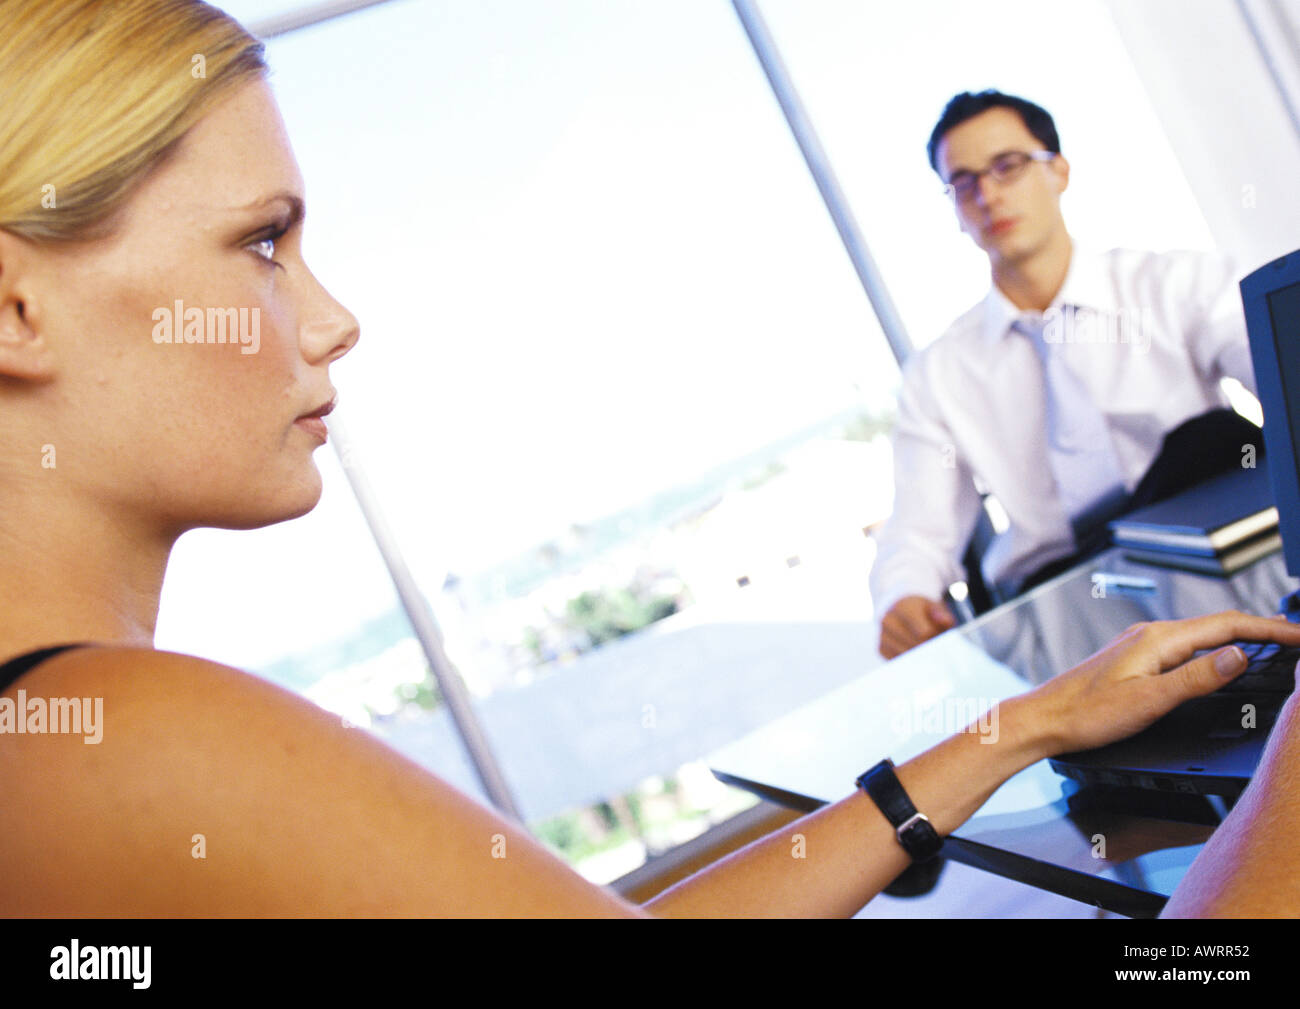 Businesswoman sitting at desk with businessman, portrait, close-up Banque D'Images